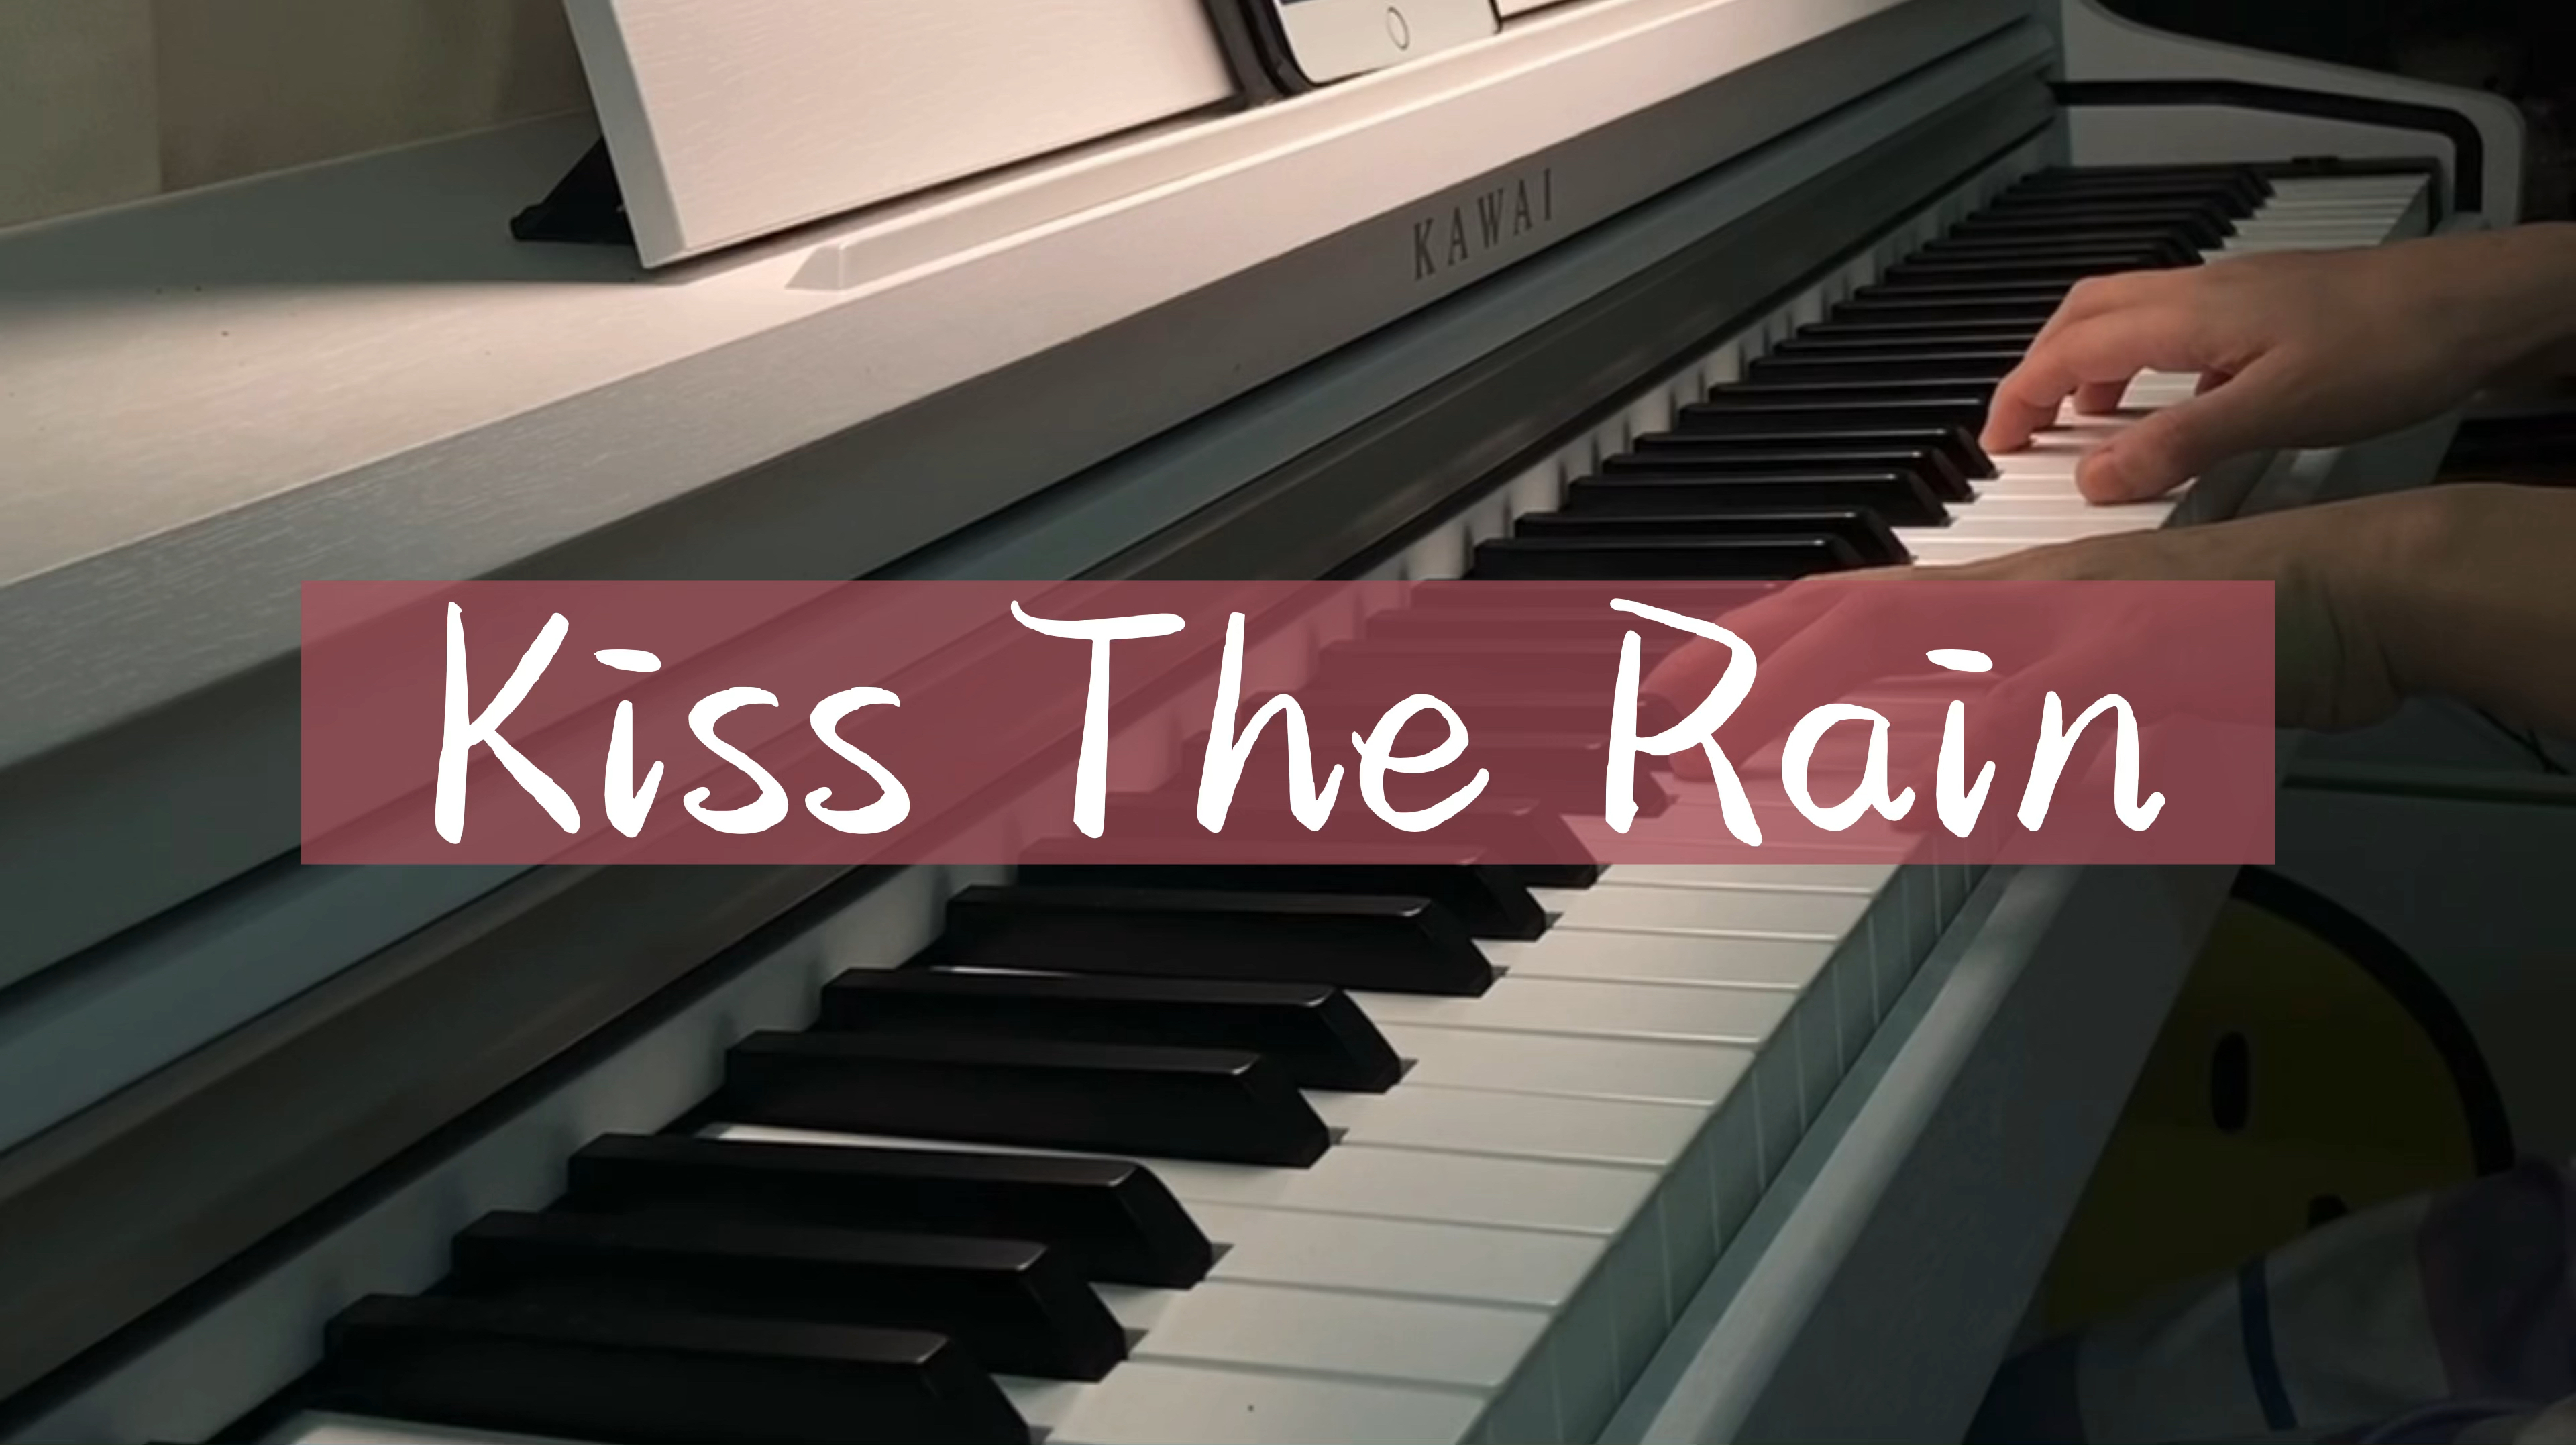 [图]世界上最美钢琴曲之一《Kiss The Rain》/《雨的印记》